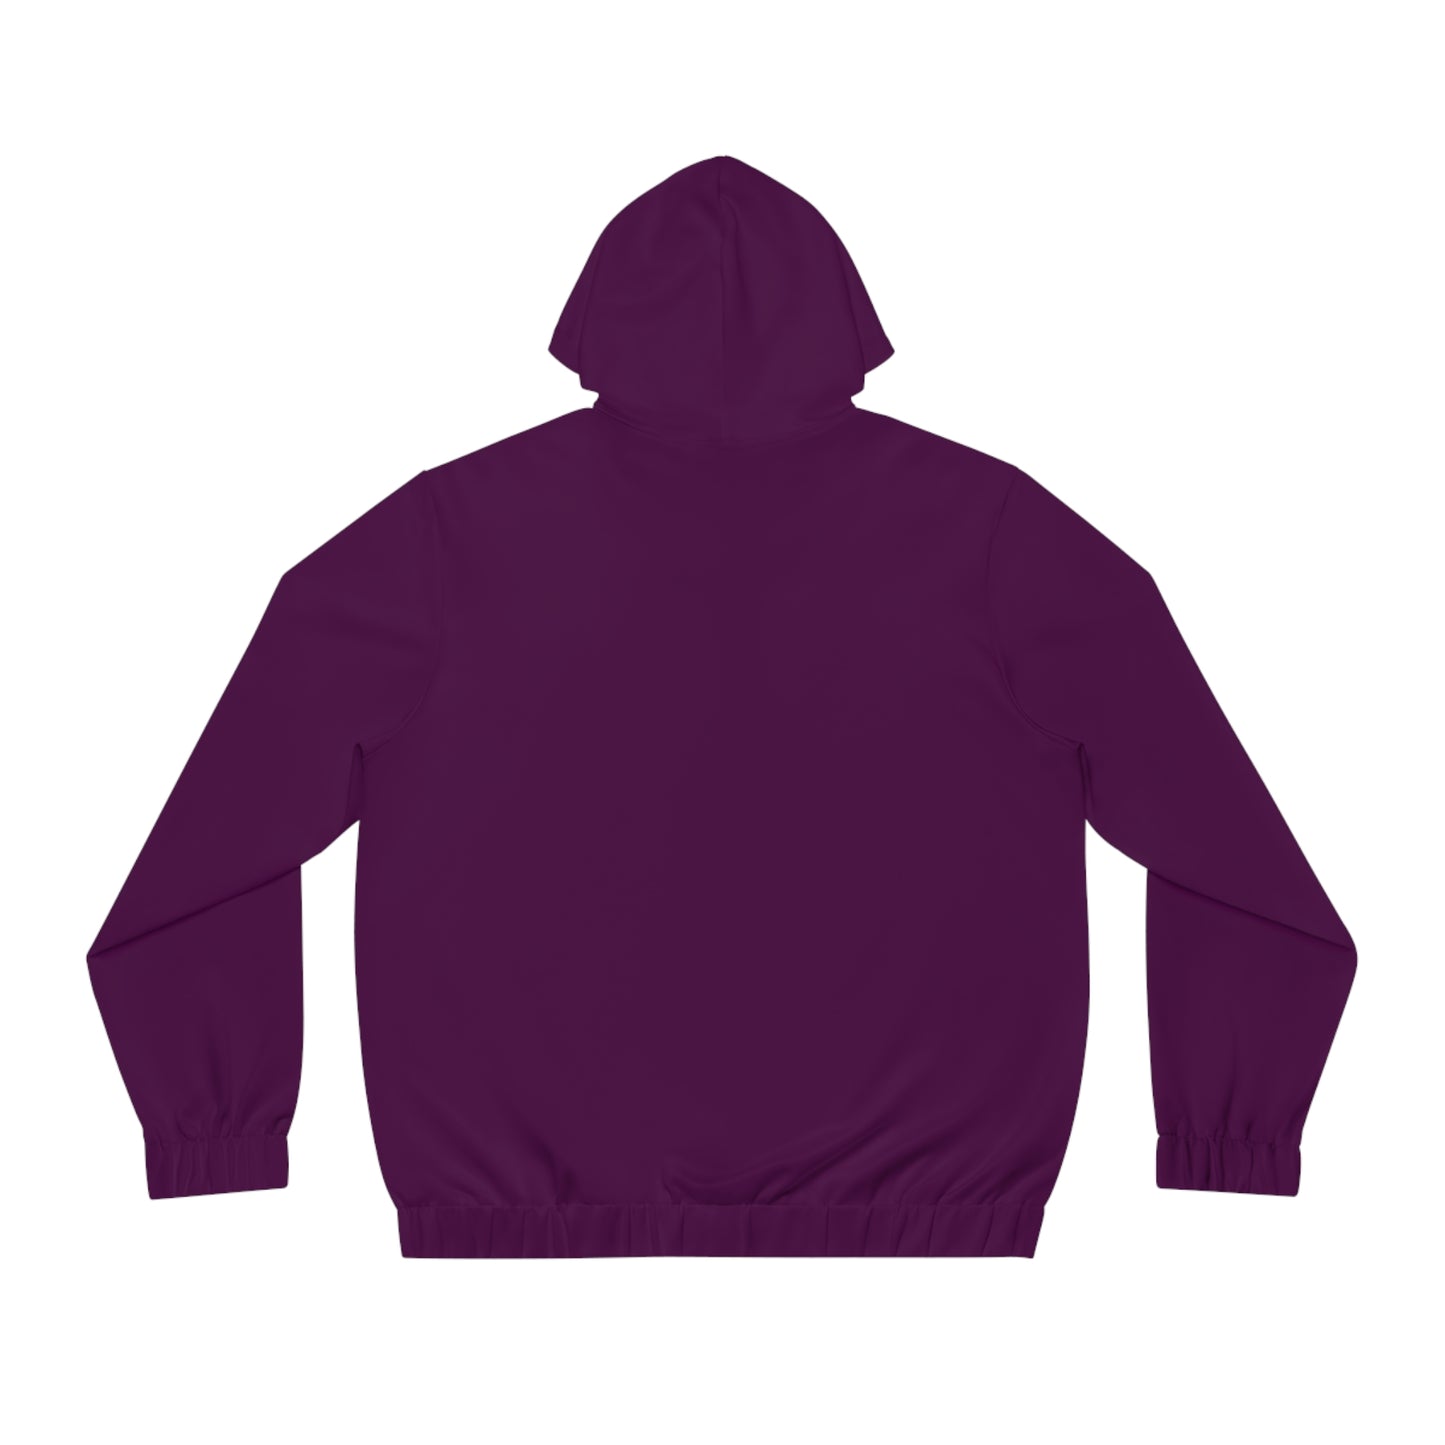 AccuRadio men's full-zip hoodie